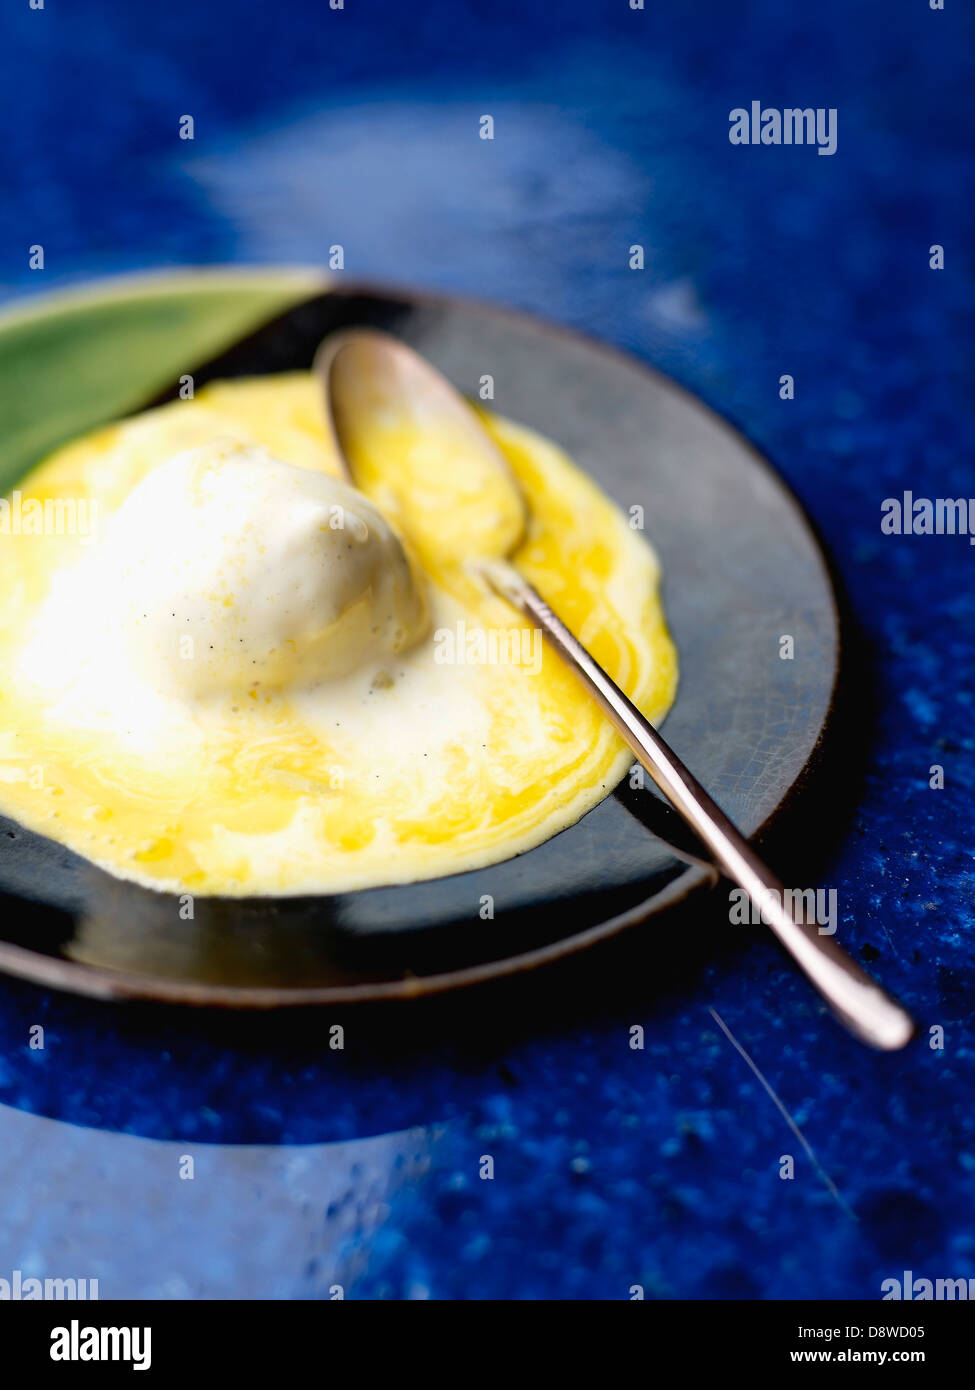 La mangue, glace vanille et dessert pomelo Banque D'Images